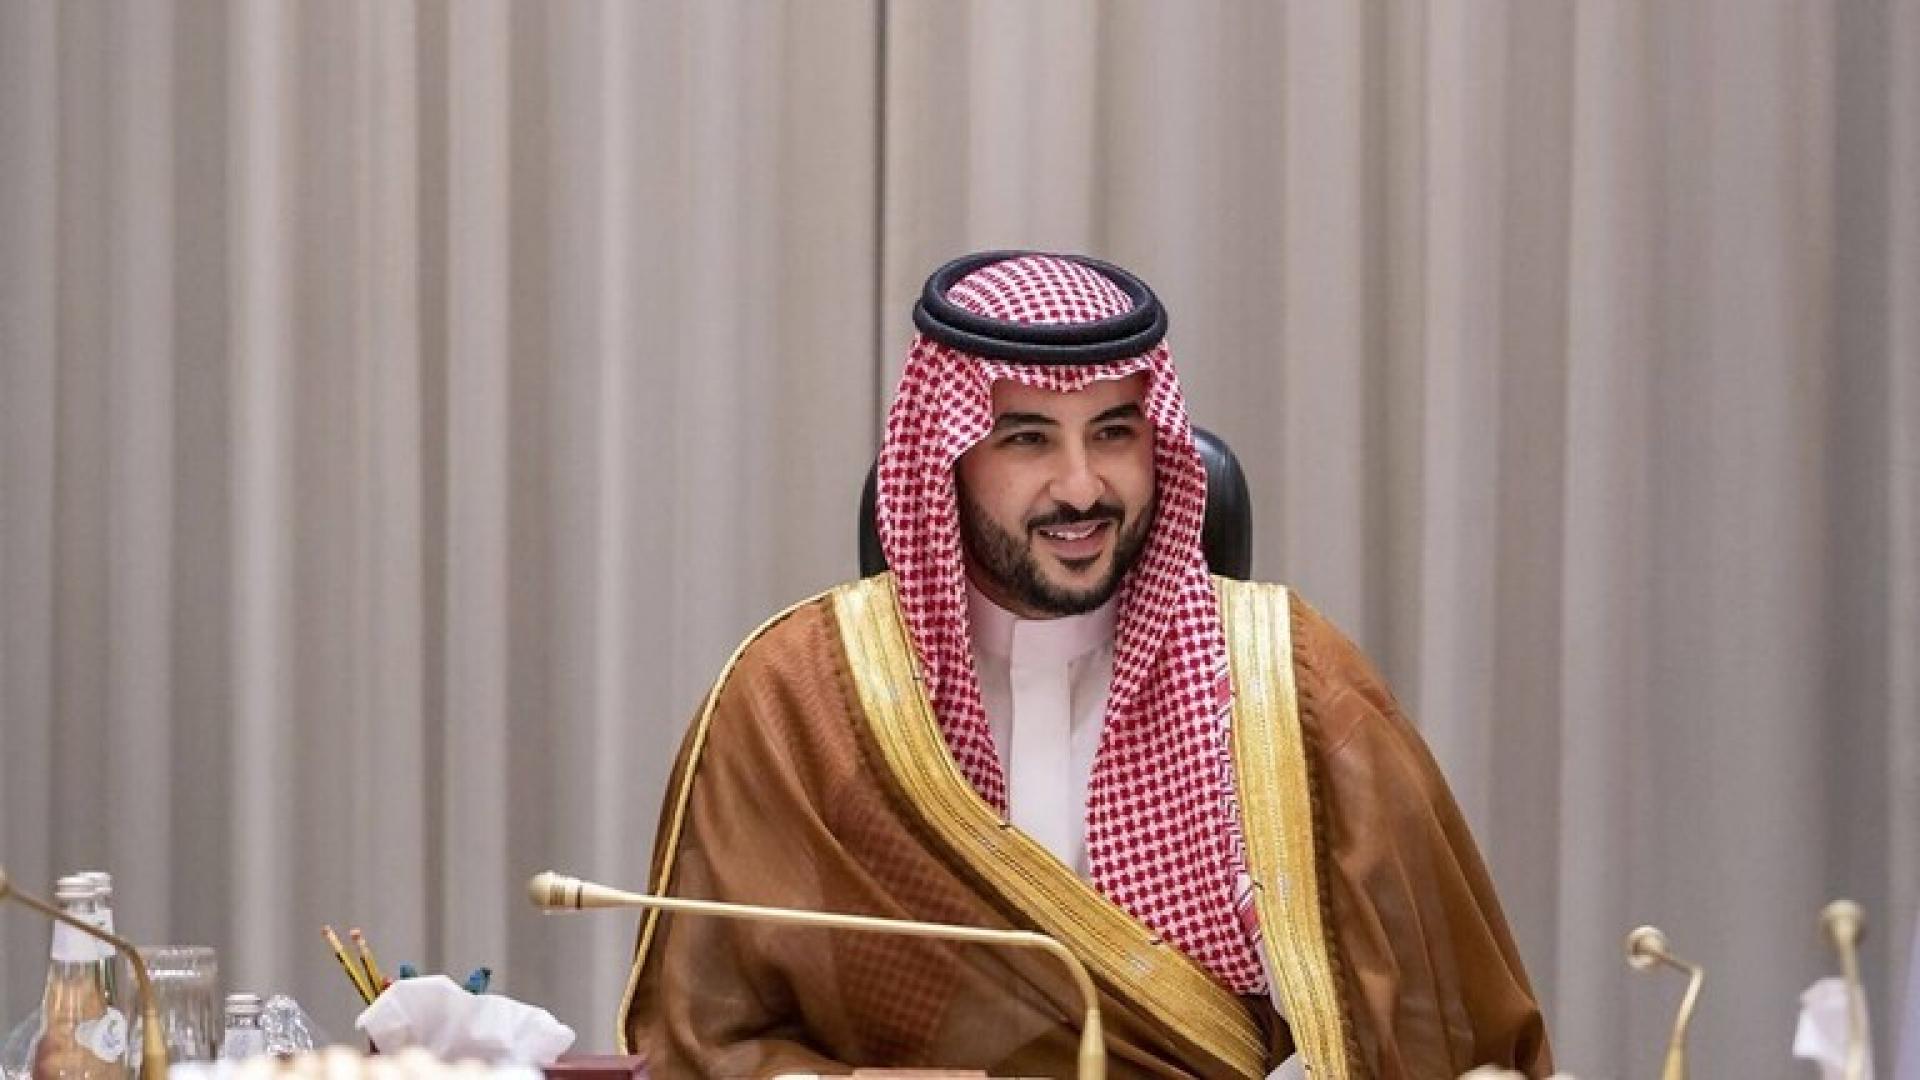 وزير الدفاع السعودي إلى واشنطن غدًا الاثنين للاجتماع بمسئولين أمريكيين